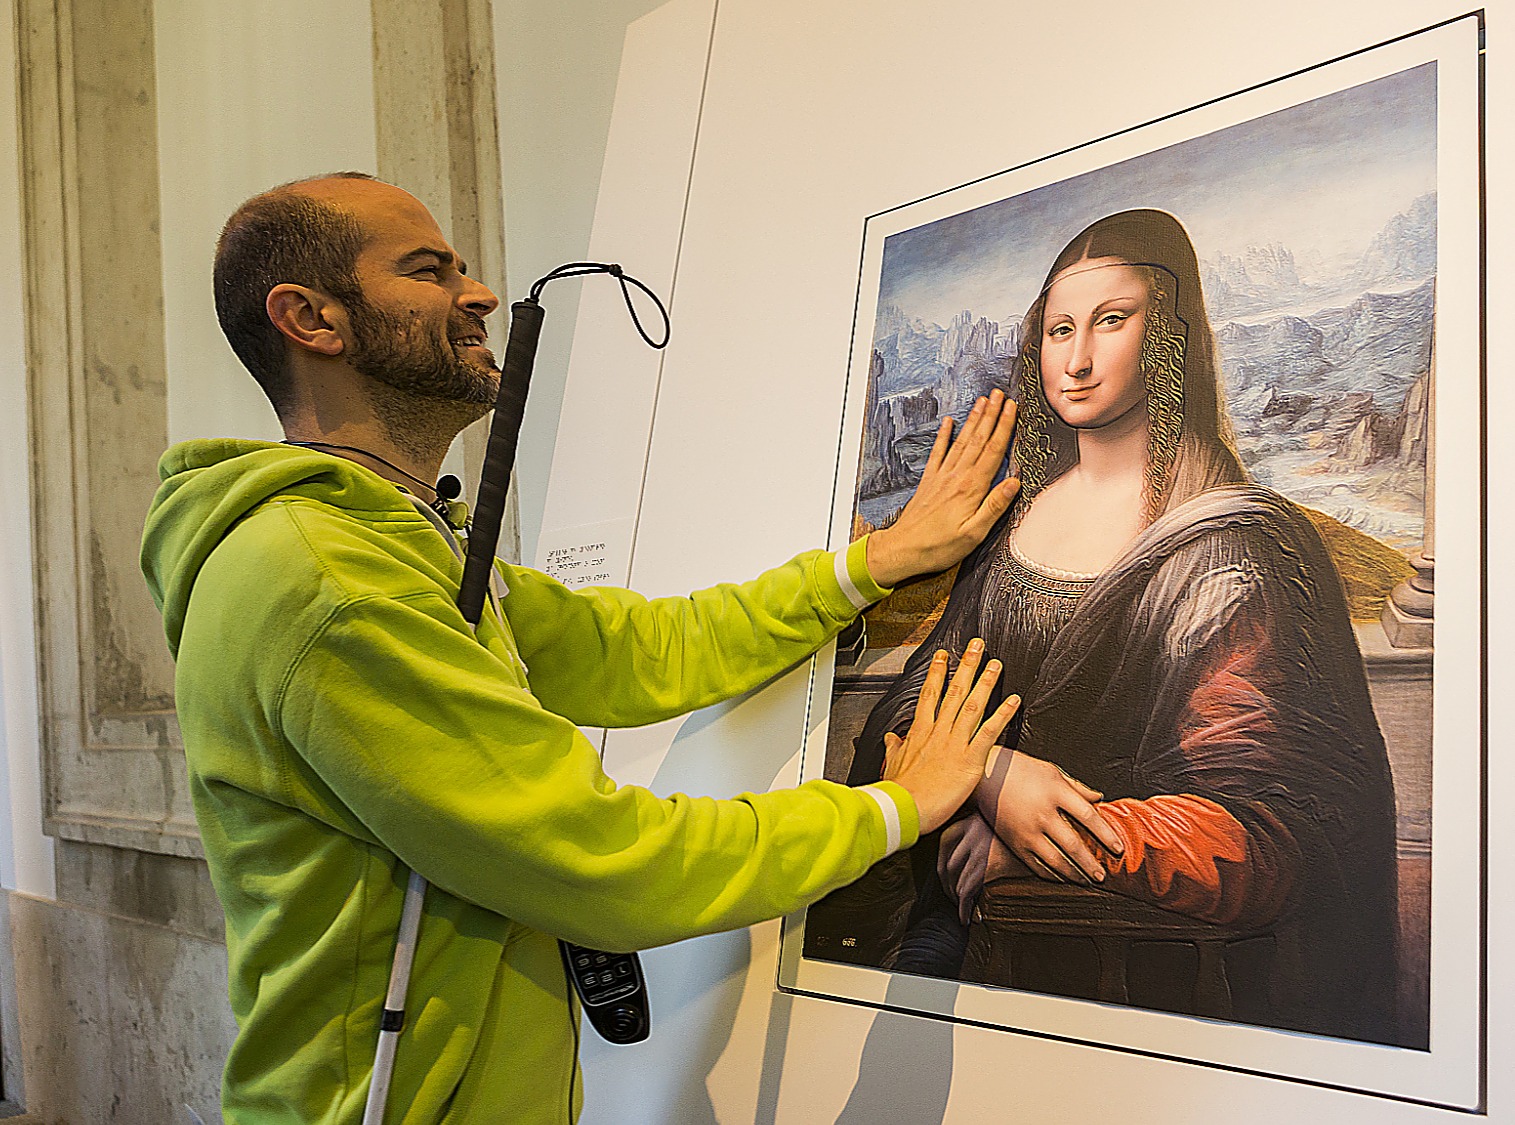 Un hombre ciego toca con sus manos un cuadro en relieve de la Mona Lisa para poder reconocer sus facciones.